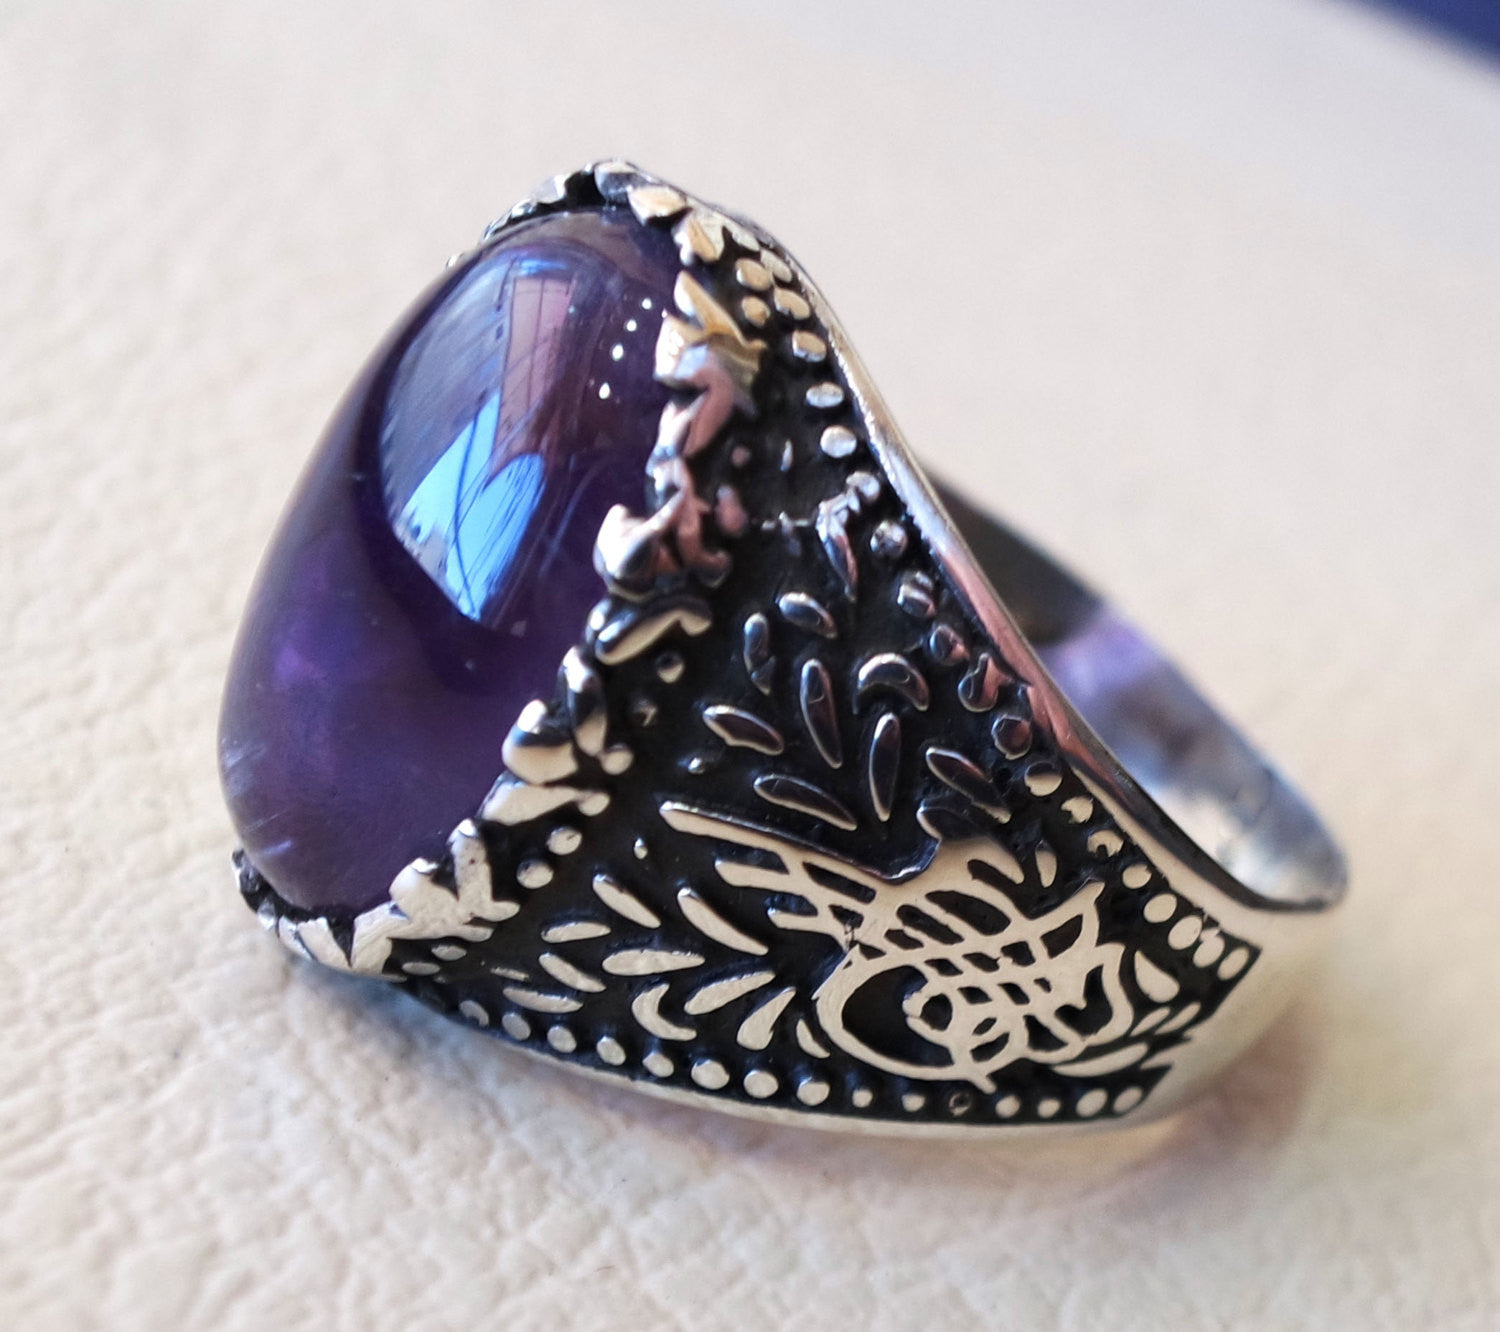 Améthyste Agate naturel violet Pierre Sterling argent 925 homme anneau Vintage arabe turc ottoman style bijoux ovale toutes les tailles